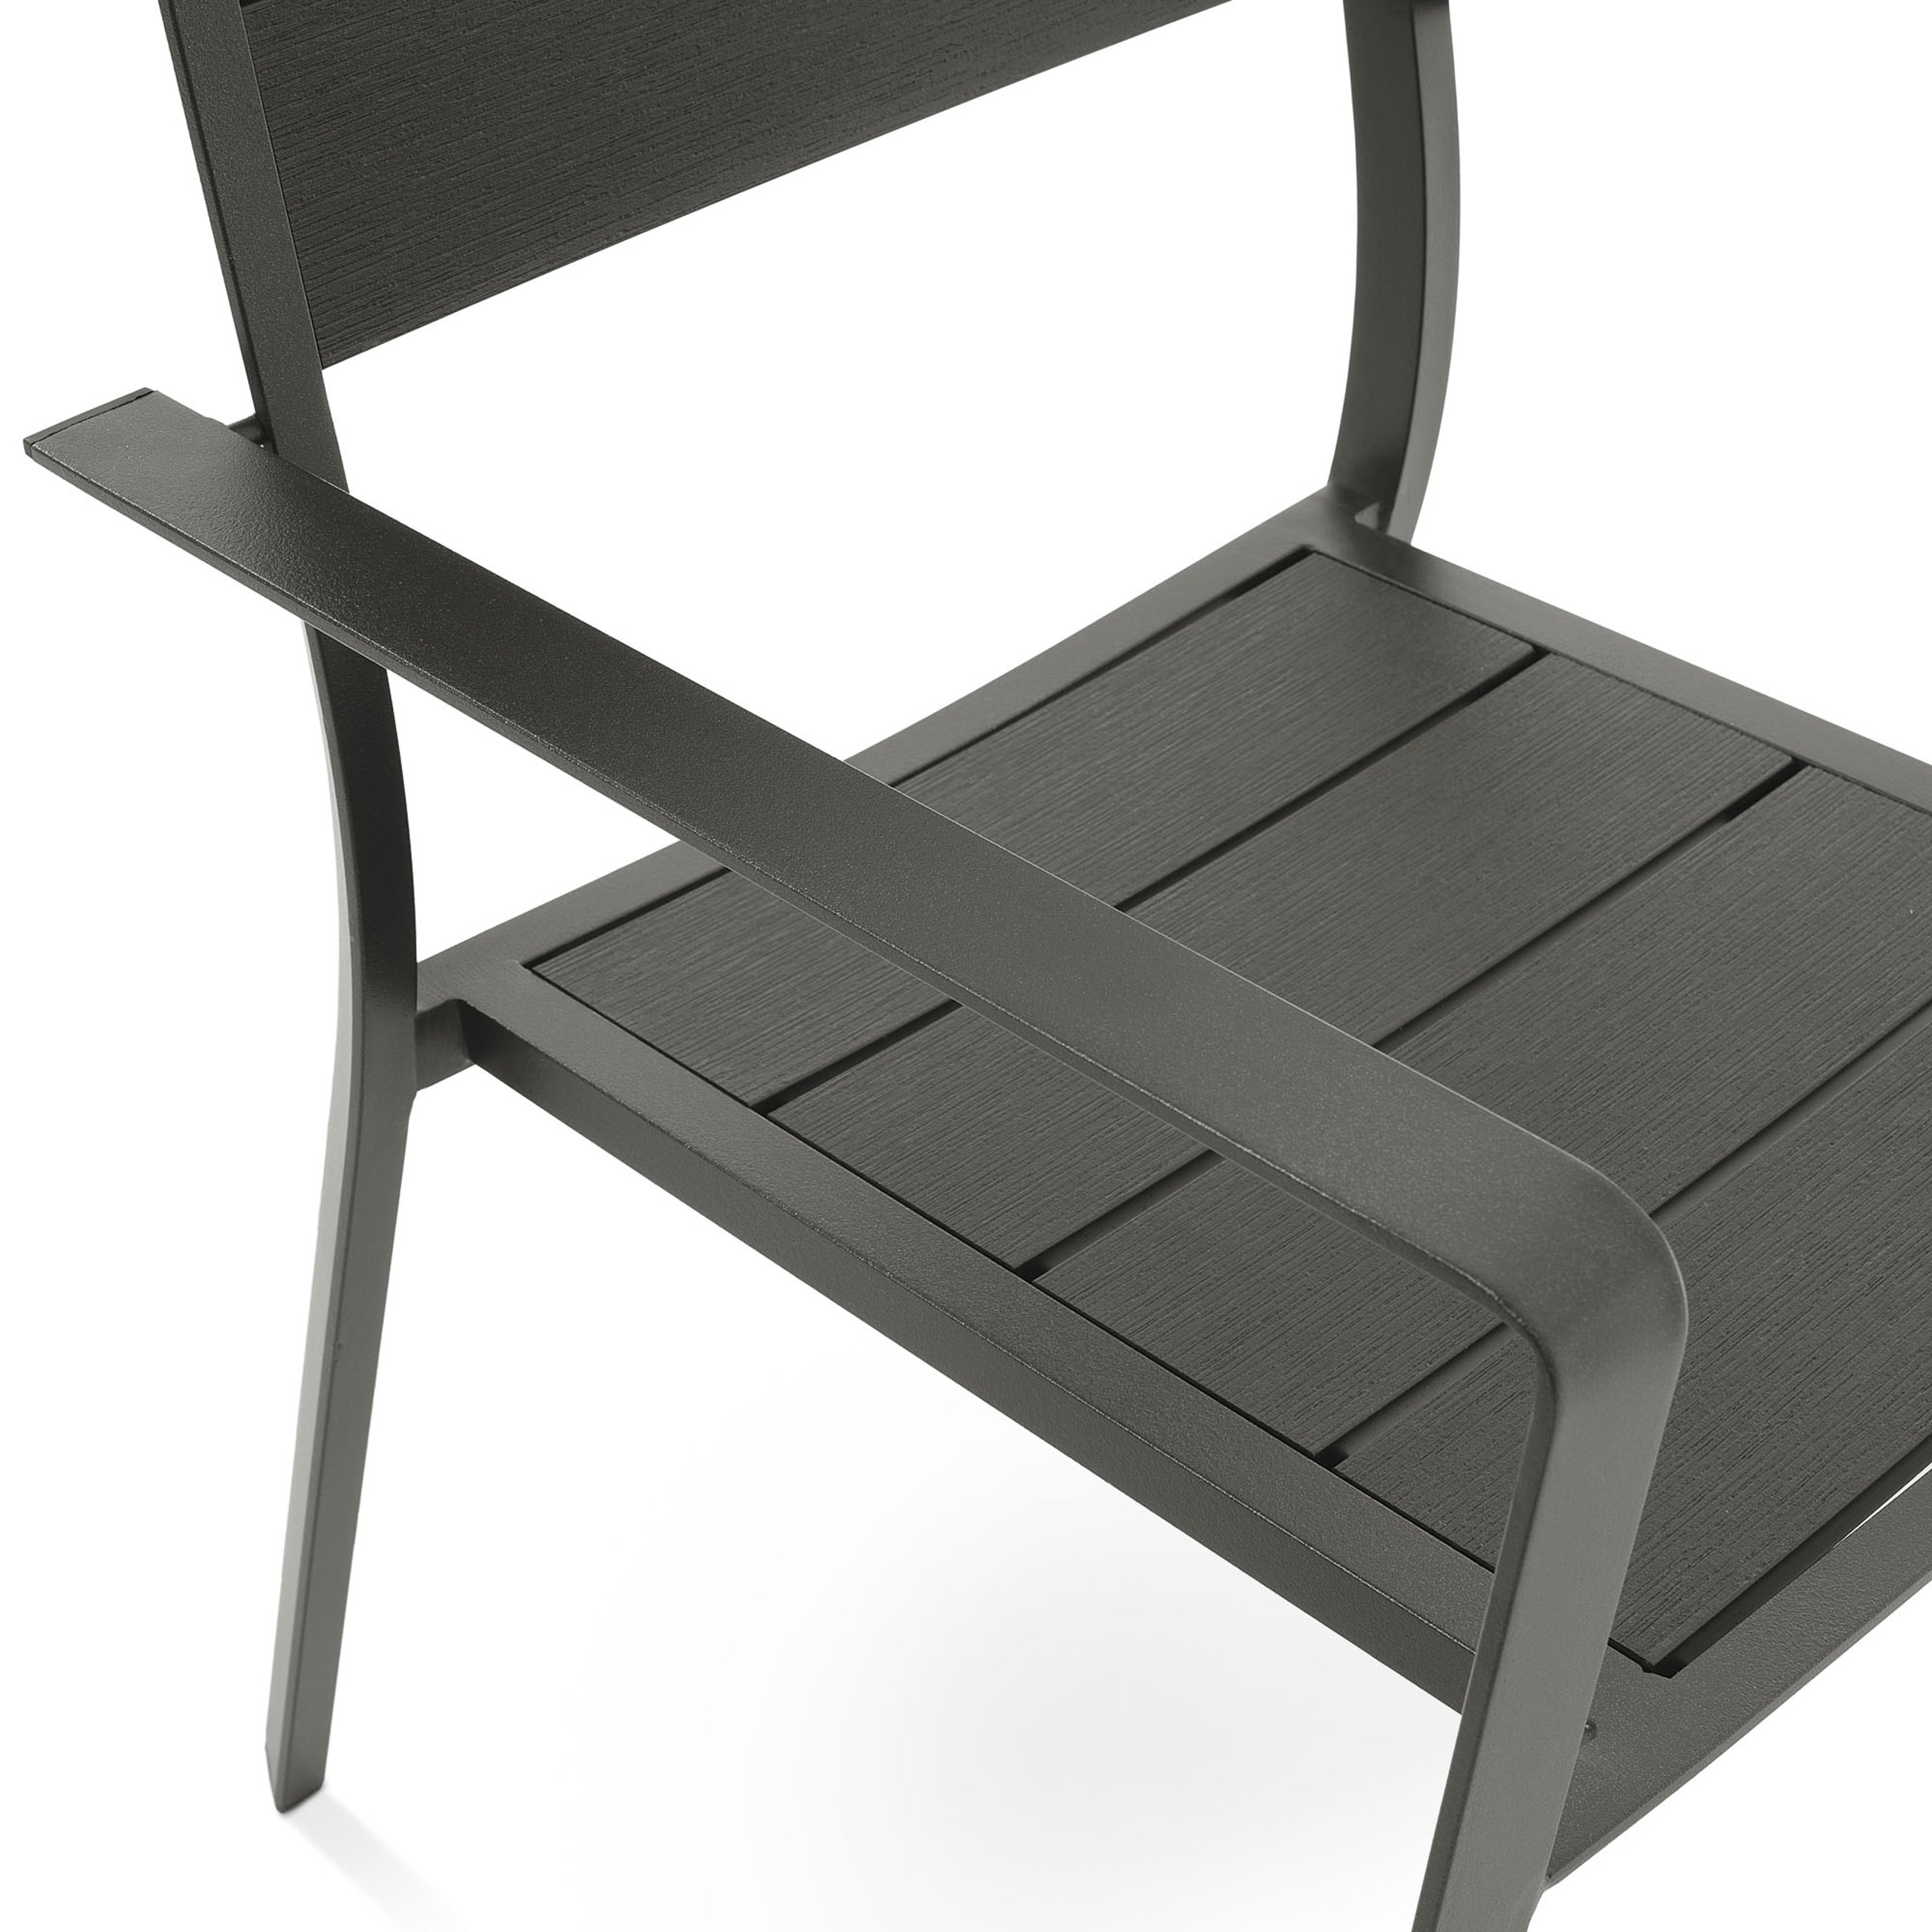 Siedzisko i oparcie krzesła Teri wykonane z wysokiej jakości polywood w kolorze czarnym